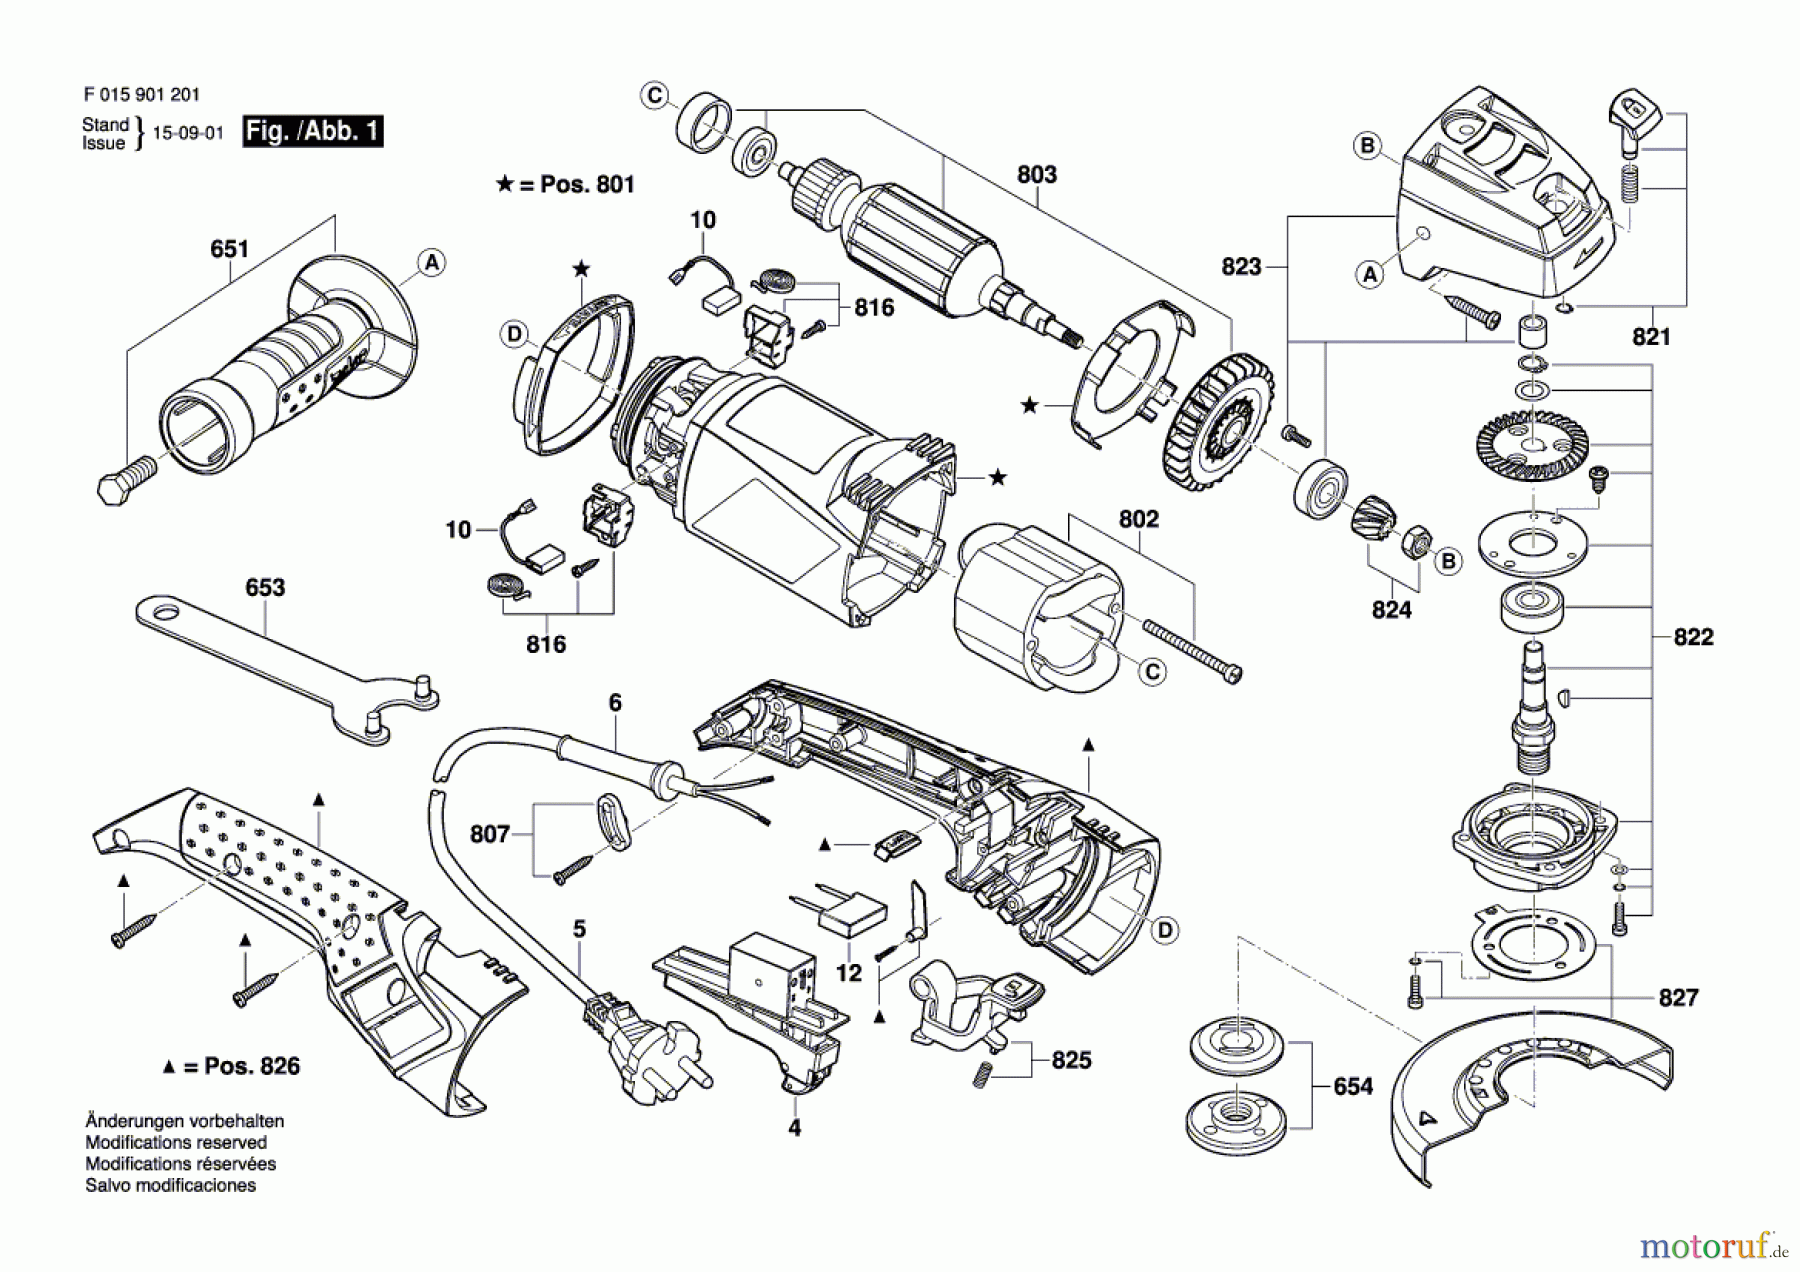  Bosch Werkzeug Pw-Winkelschleifer 9012 Seite 1